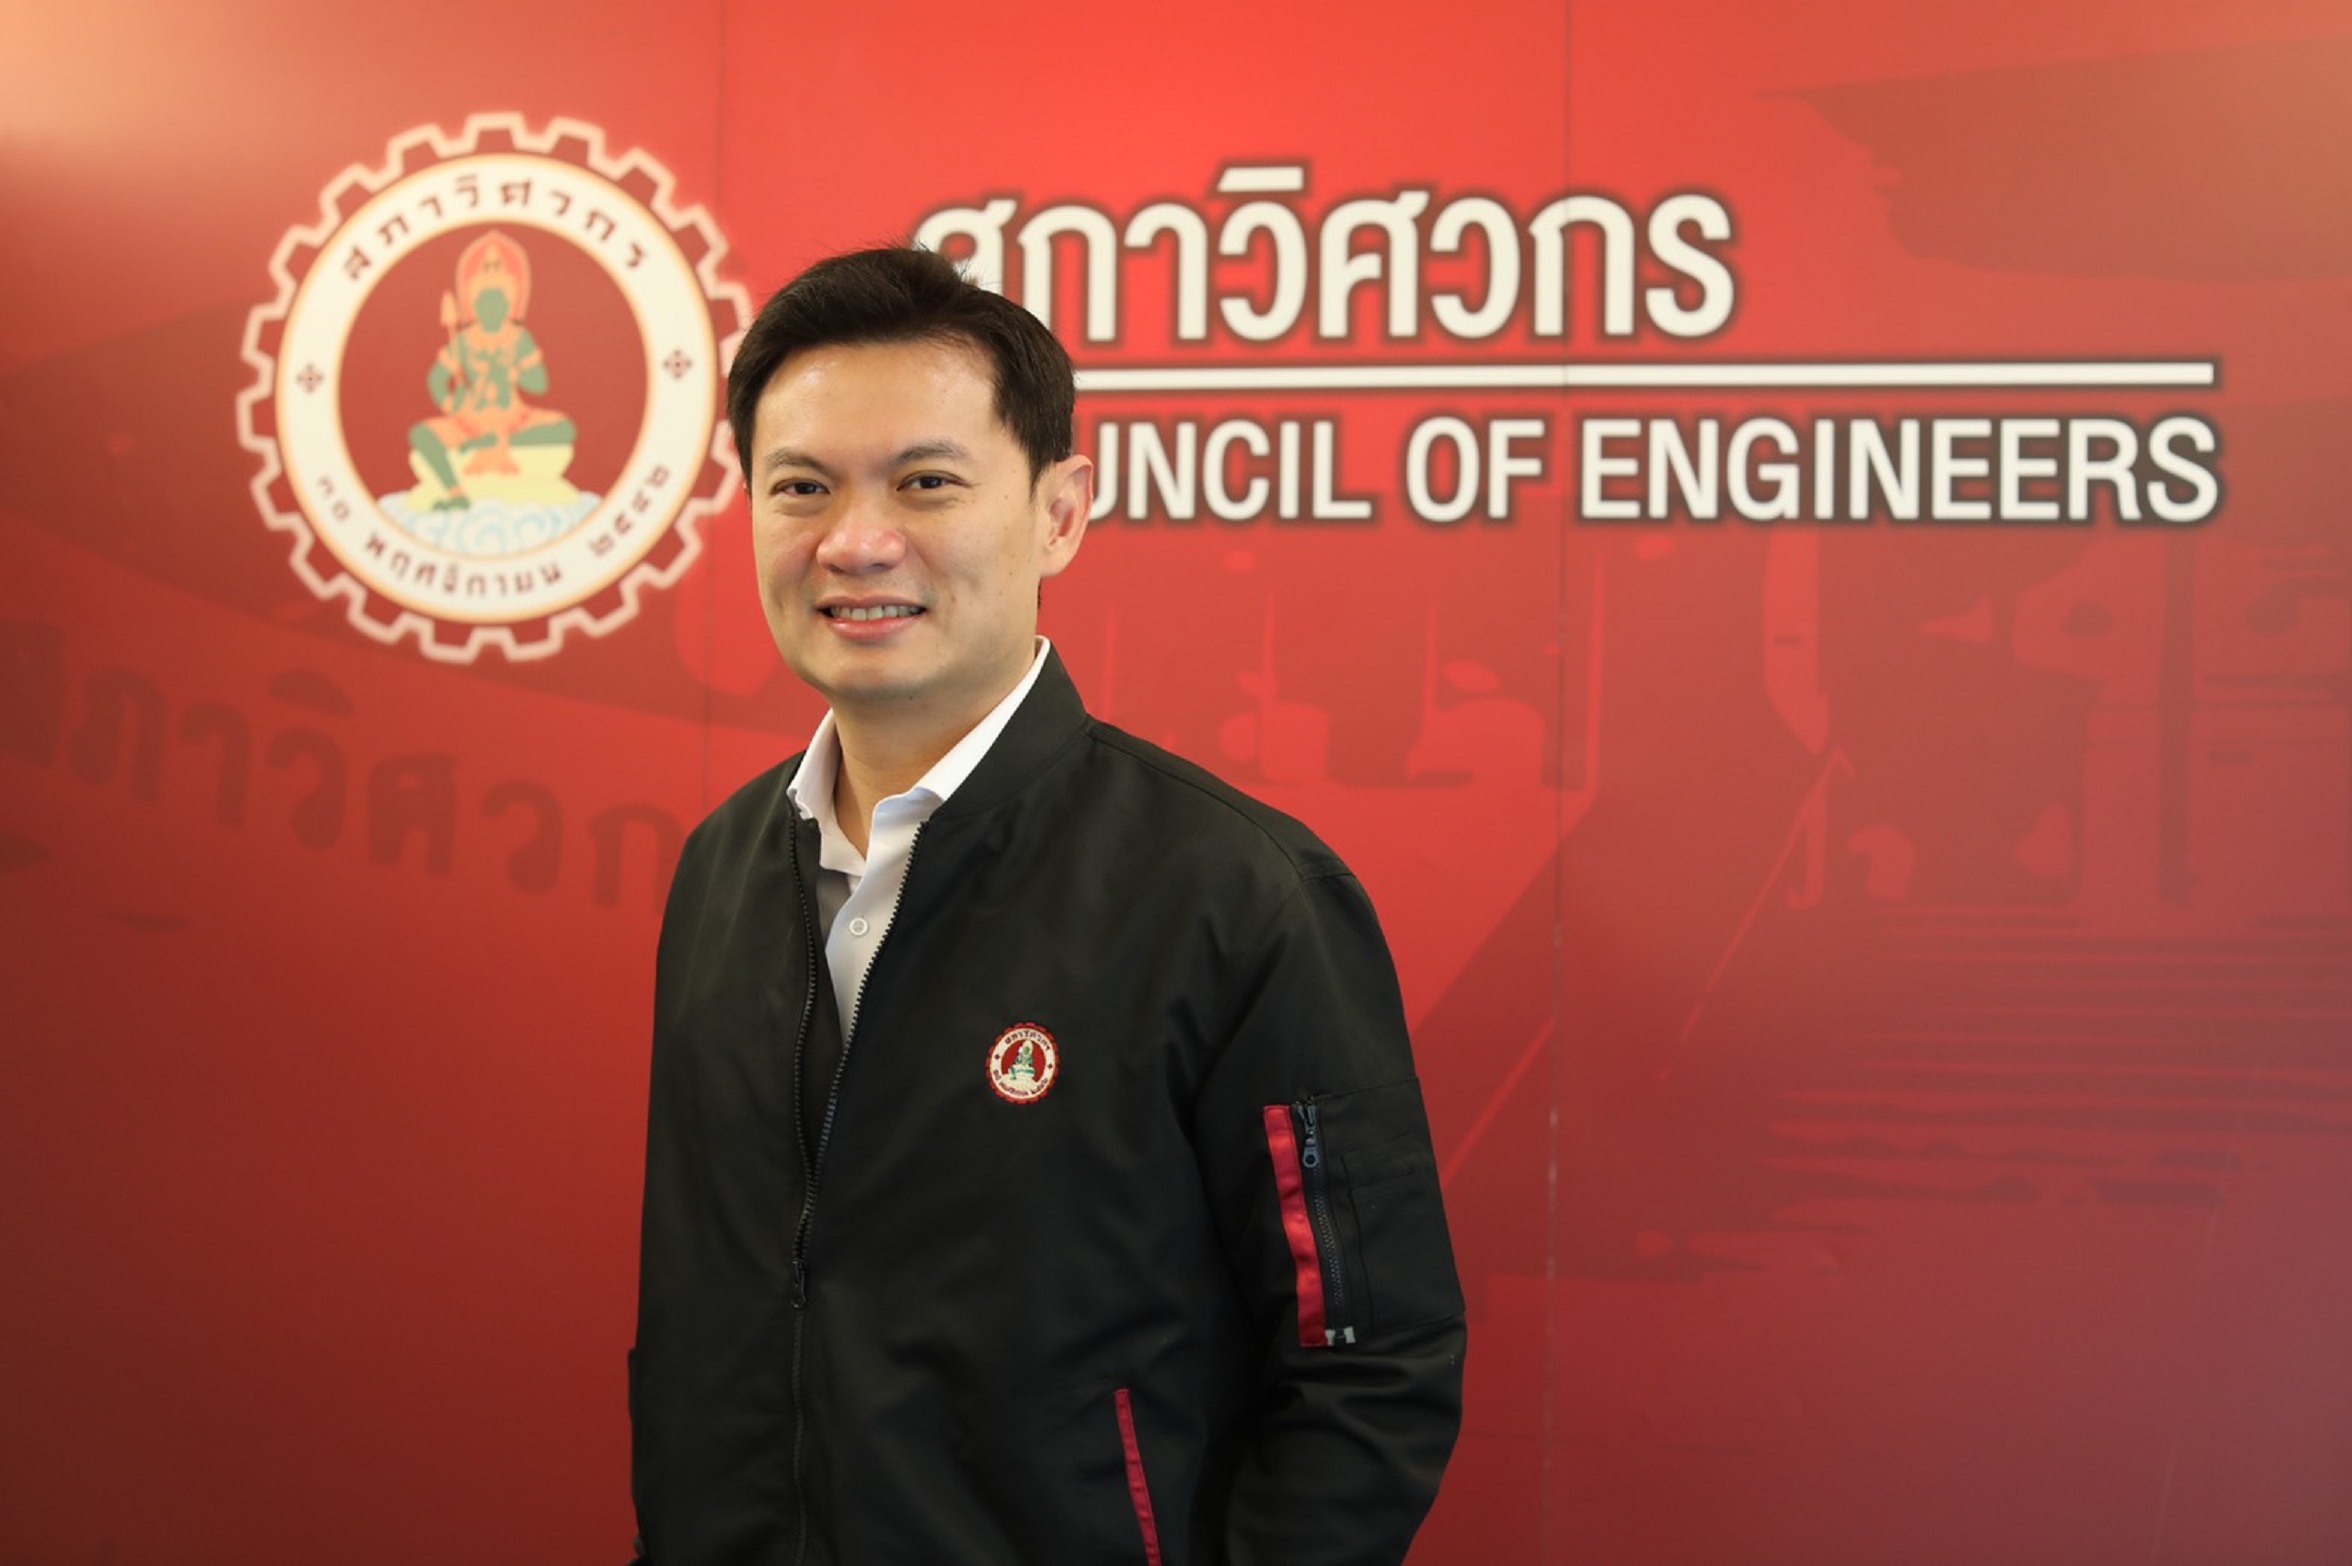 สภาวิศวกร ปลื้มศักยภาพ วิศวกร-มหาวิทยาลัยไทย หนุนแพทย์-พยาบาล สู้โควิด-19 ด้วย นวัตกรรมและเทคโนโลยี